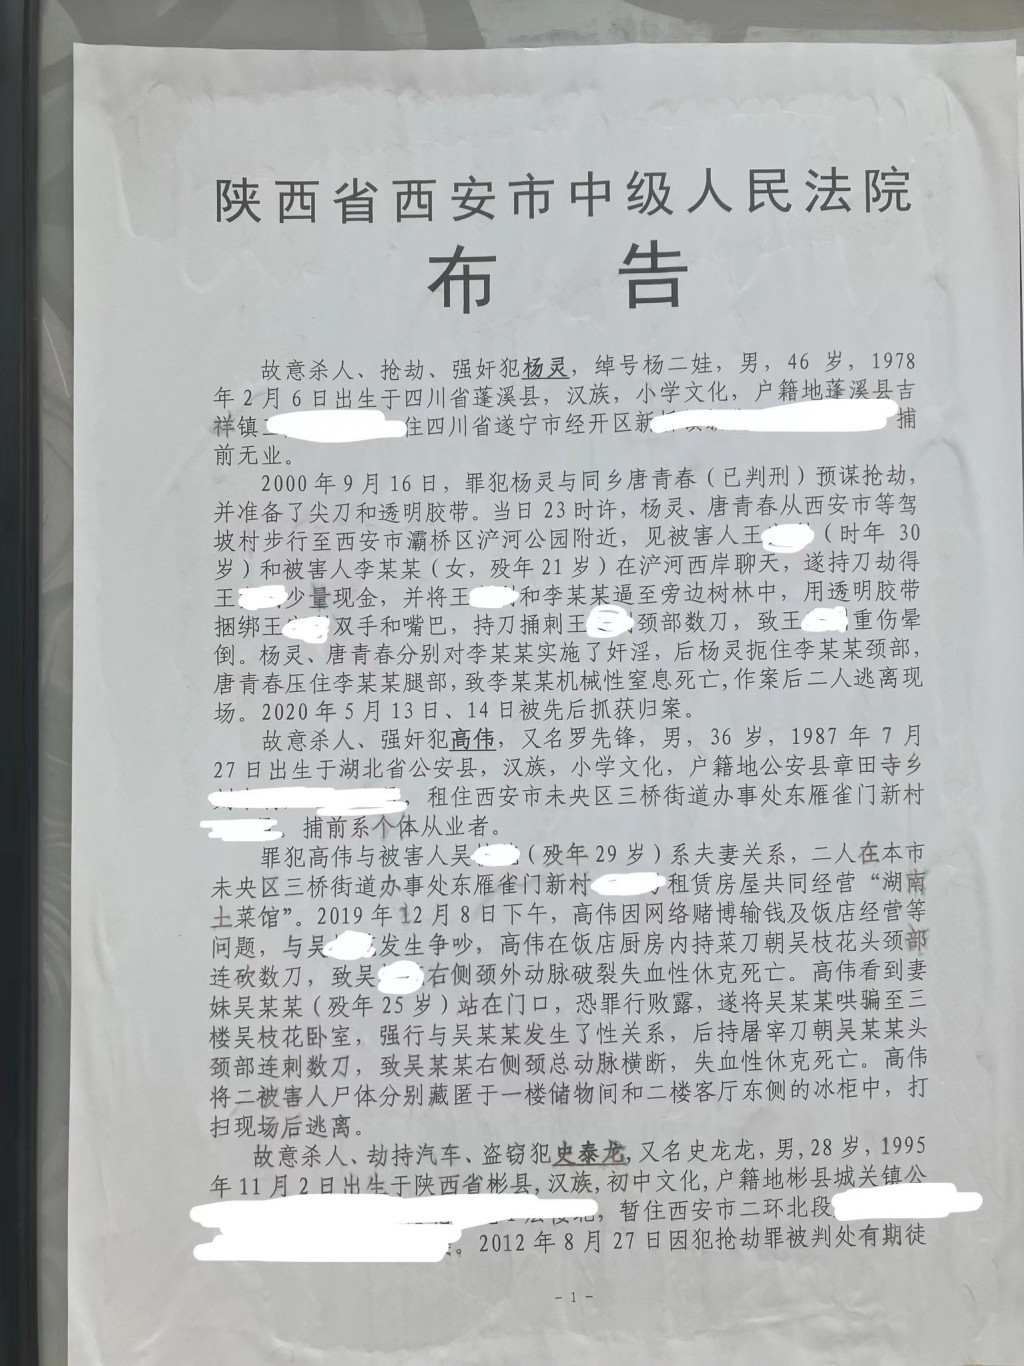 陝西西安中院發佈的相關告示。